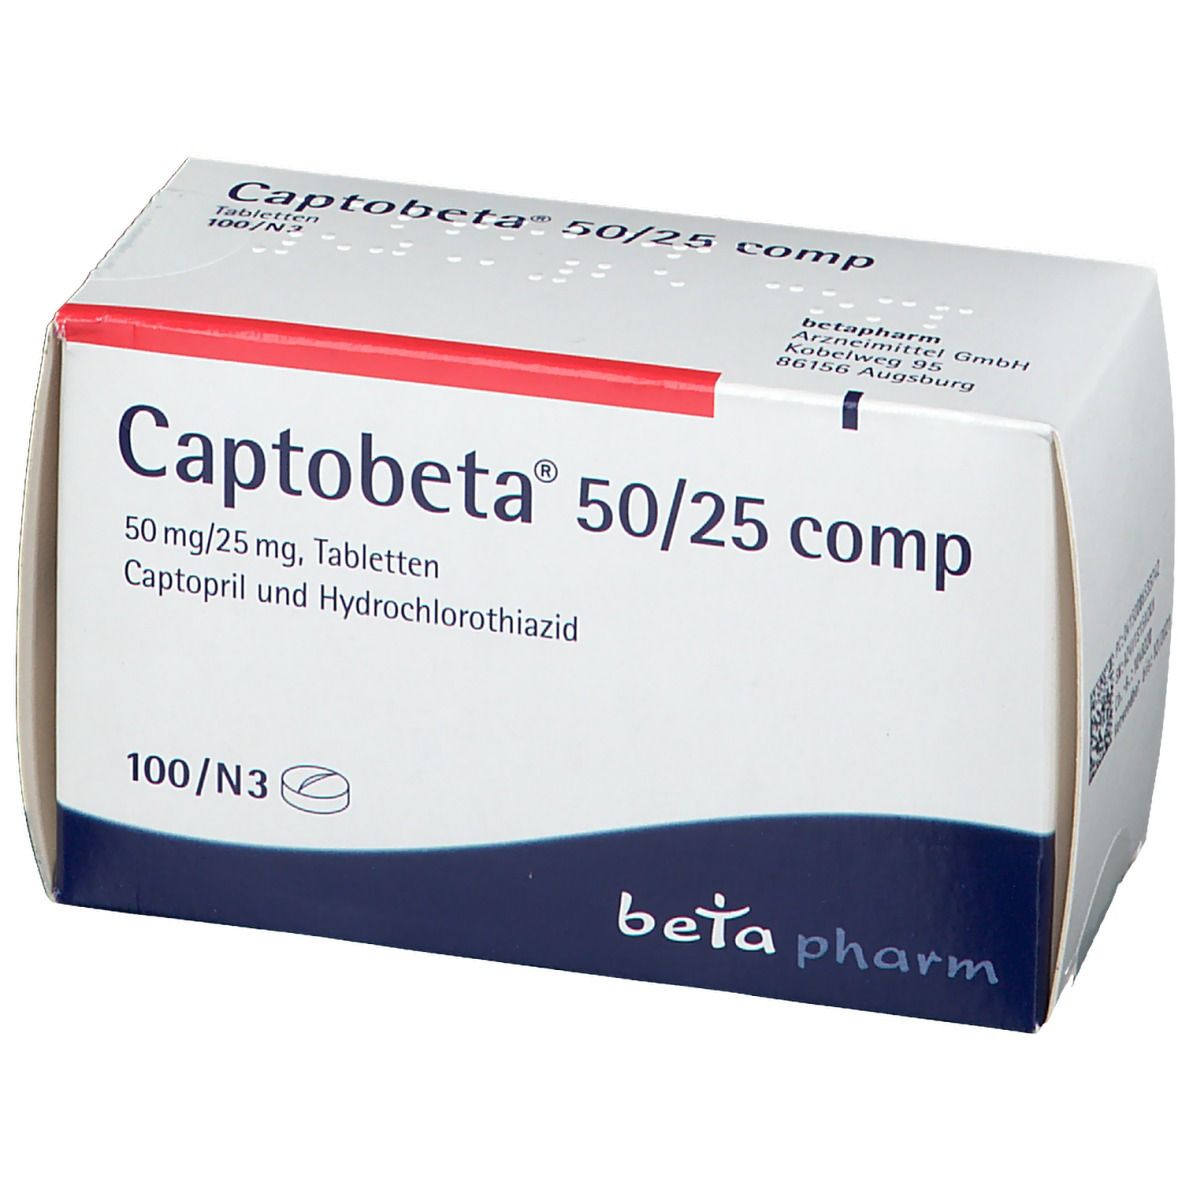 Captobeta® 50/25 comp